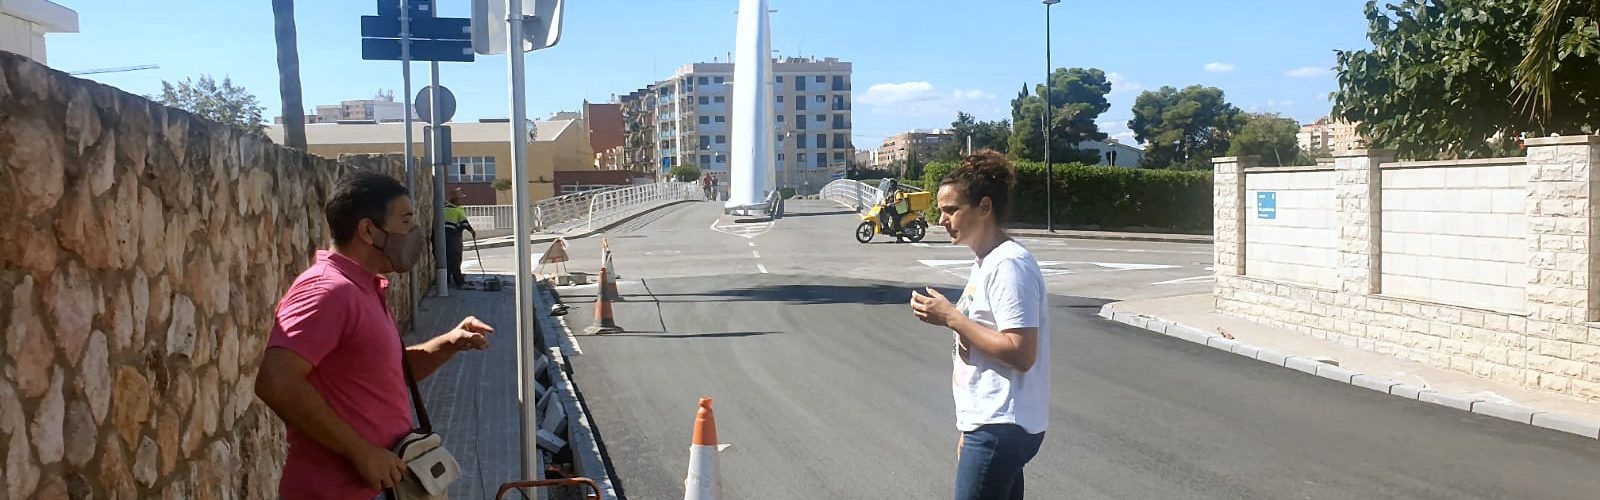 L’Ajuntament millora l’asfalt en diversos punts del municipi